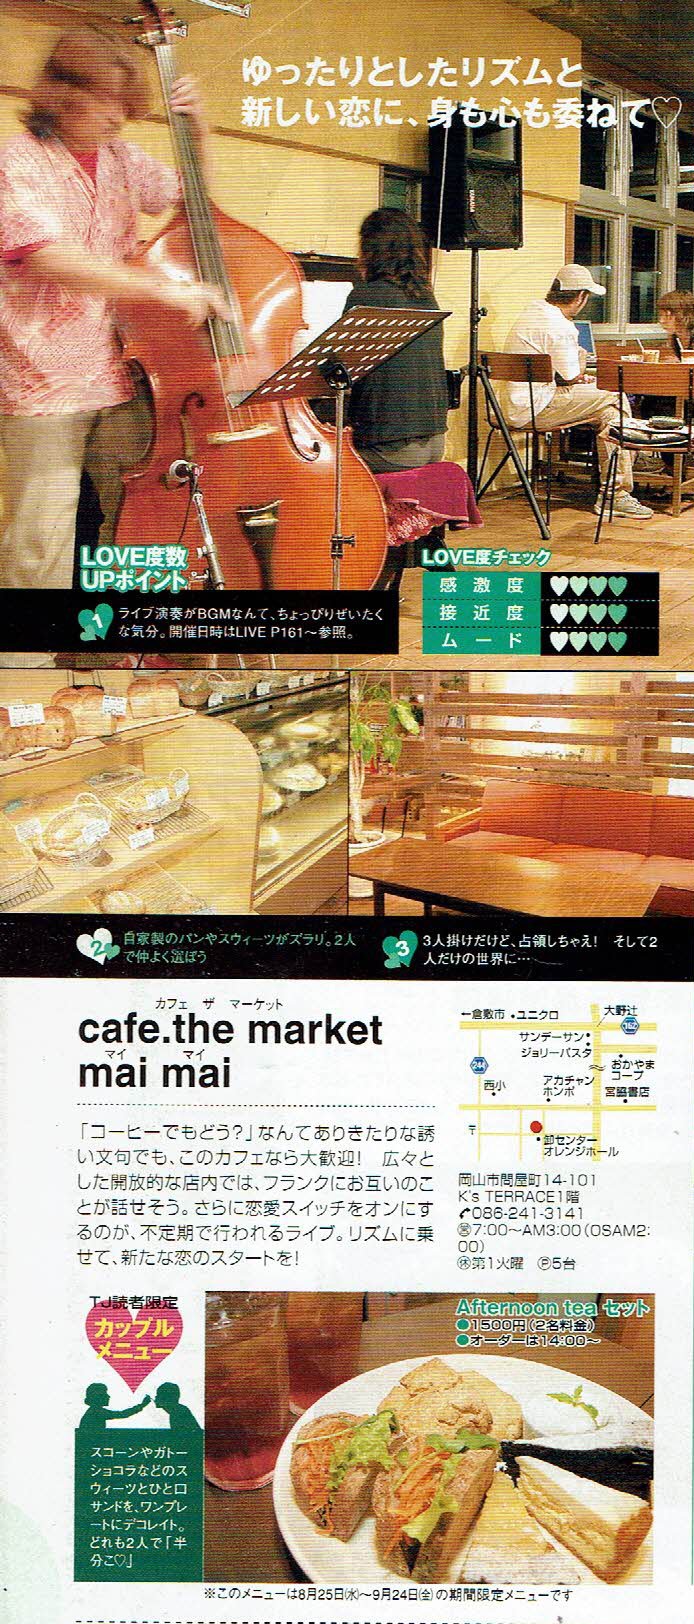 2004年8月25日-月刊タウン情報おかやま No.330-maimai